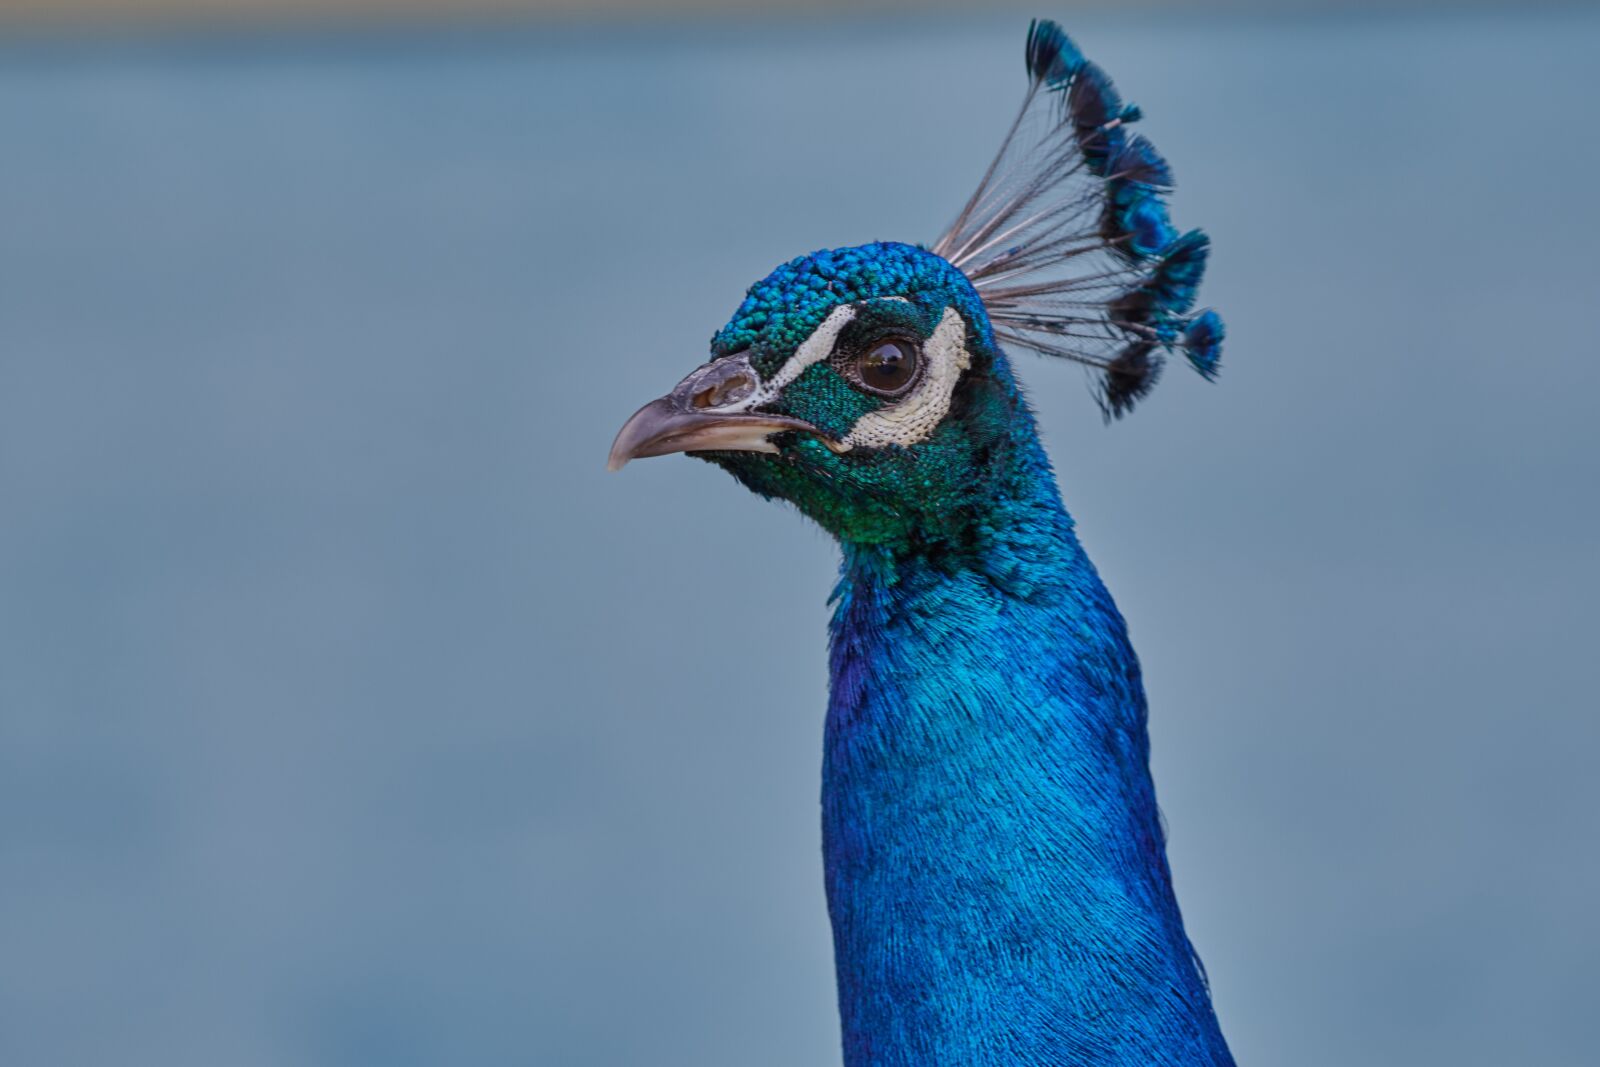 Nikon D500 sample photo. Peacock, bird, feather photography